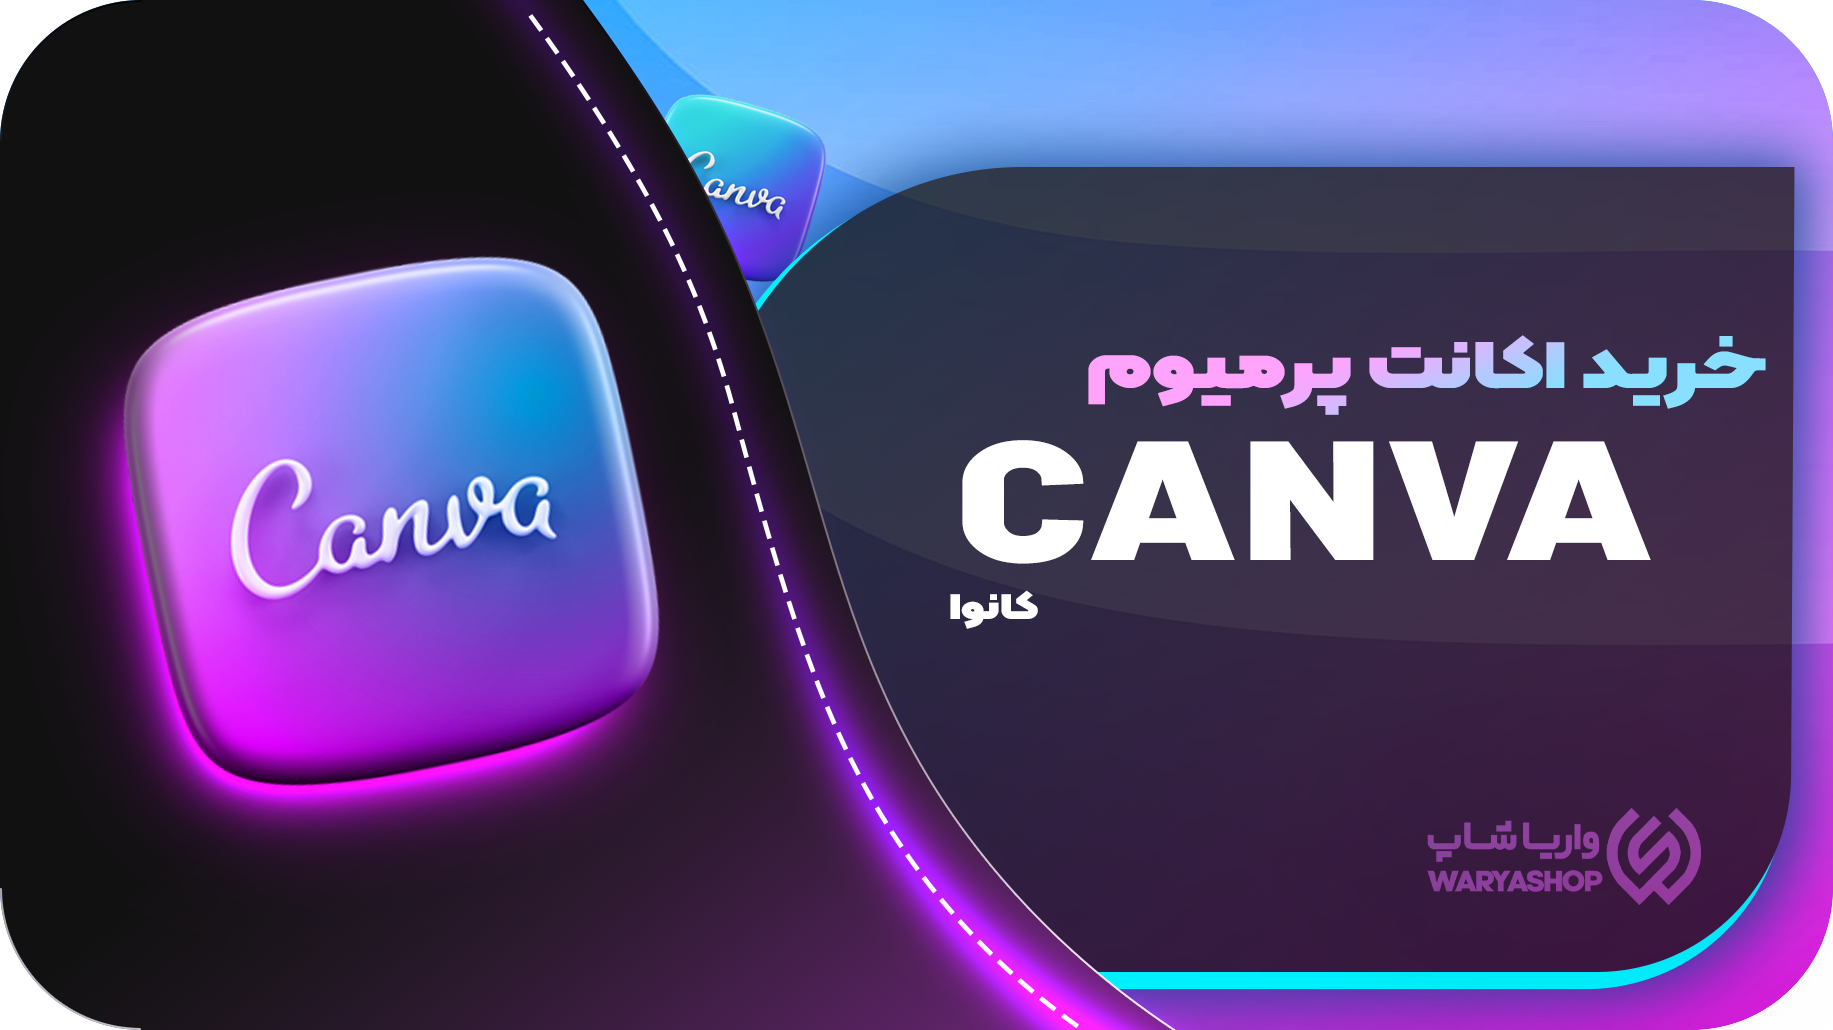 خرید اکانت Canva کانوا ارزان (45 روزه) ارزان